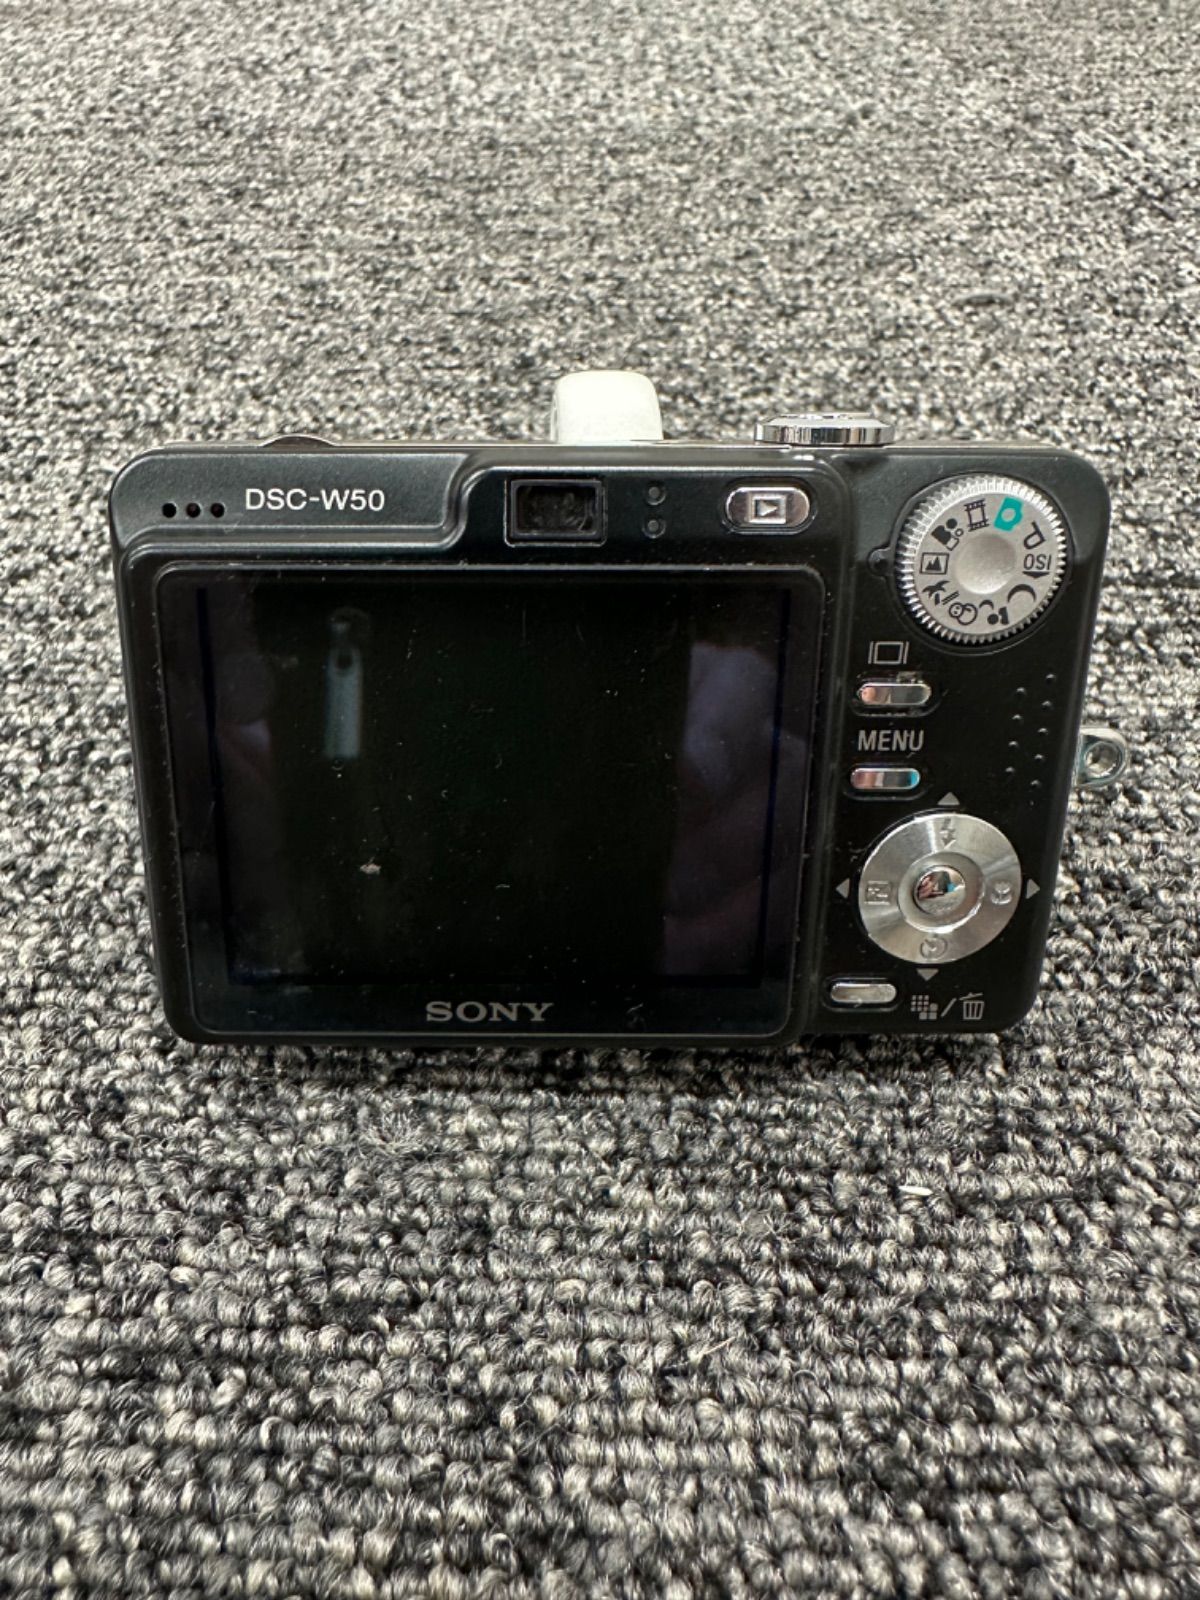 ソニーSONY DSC-W50 デジタルカメラ - デジタルカメラ